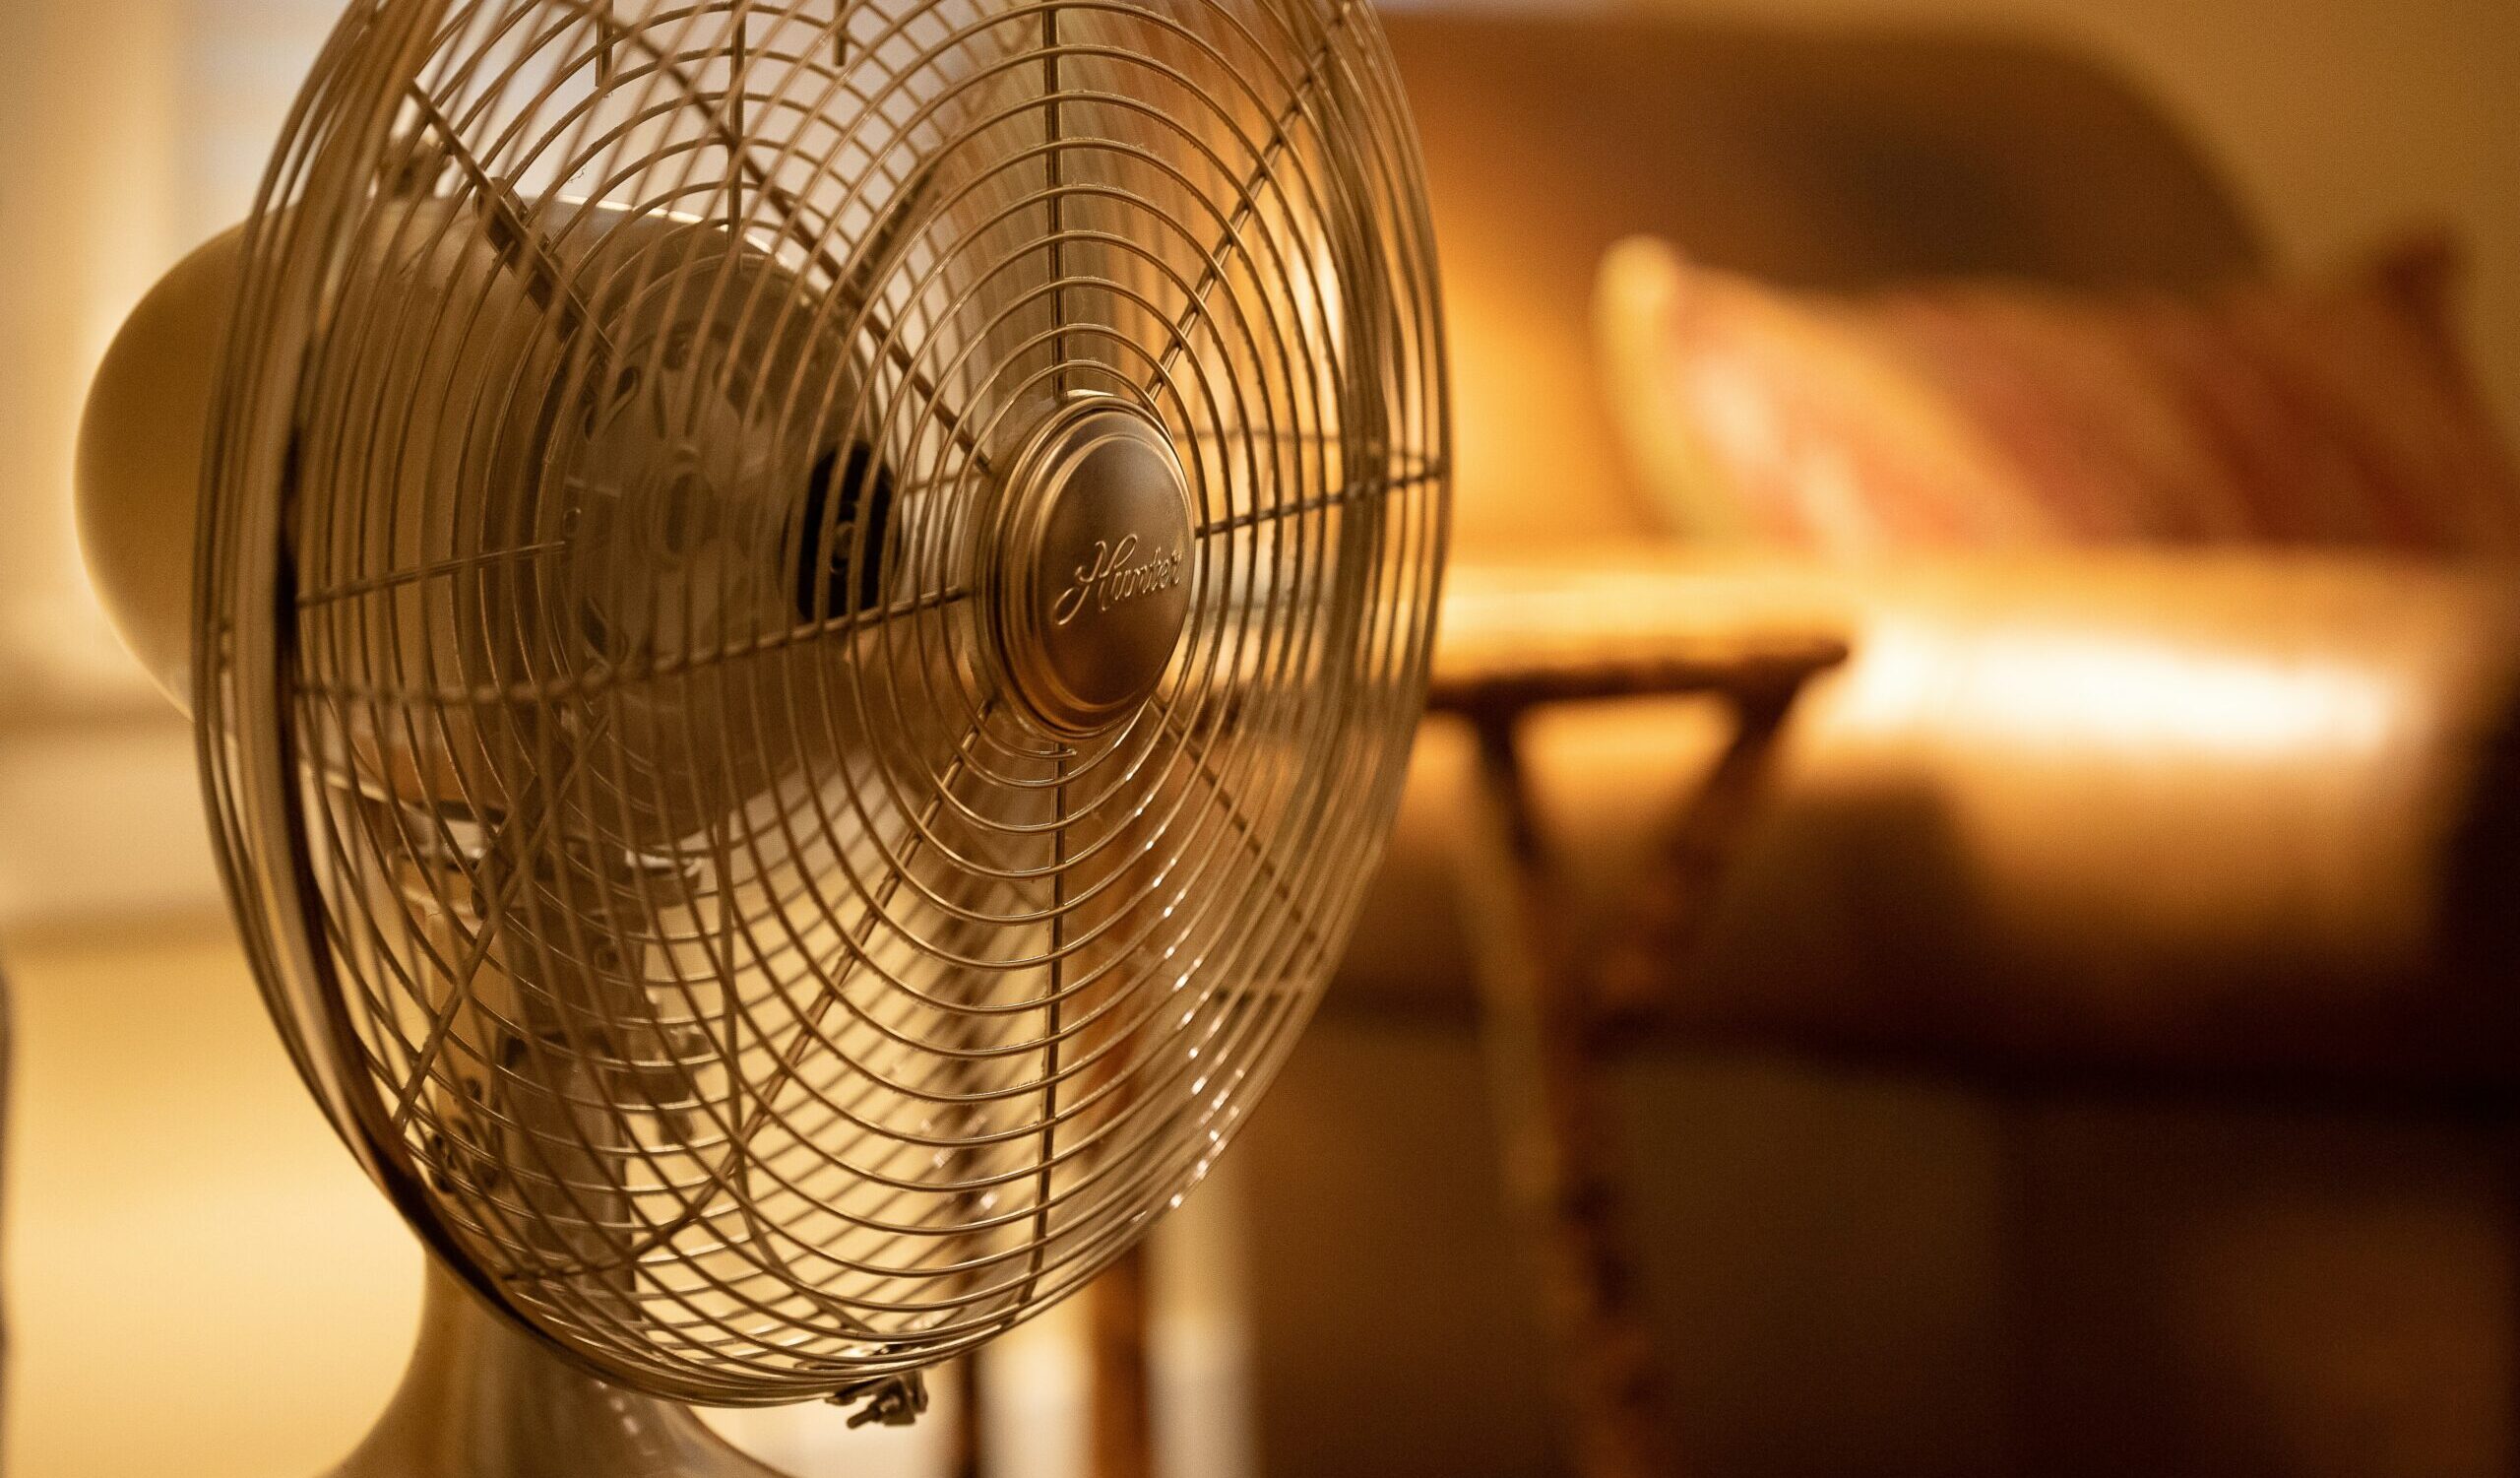 Fan in a warm room